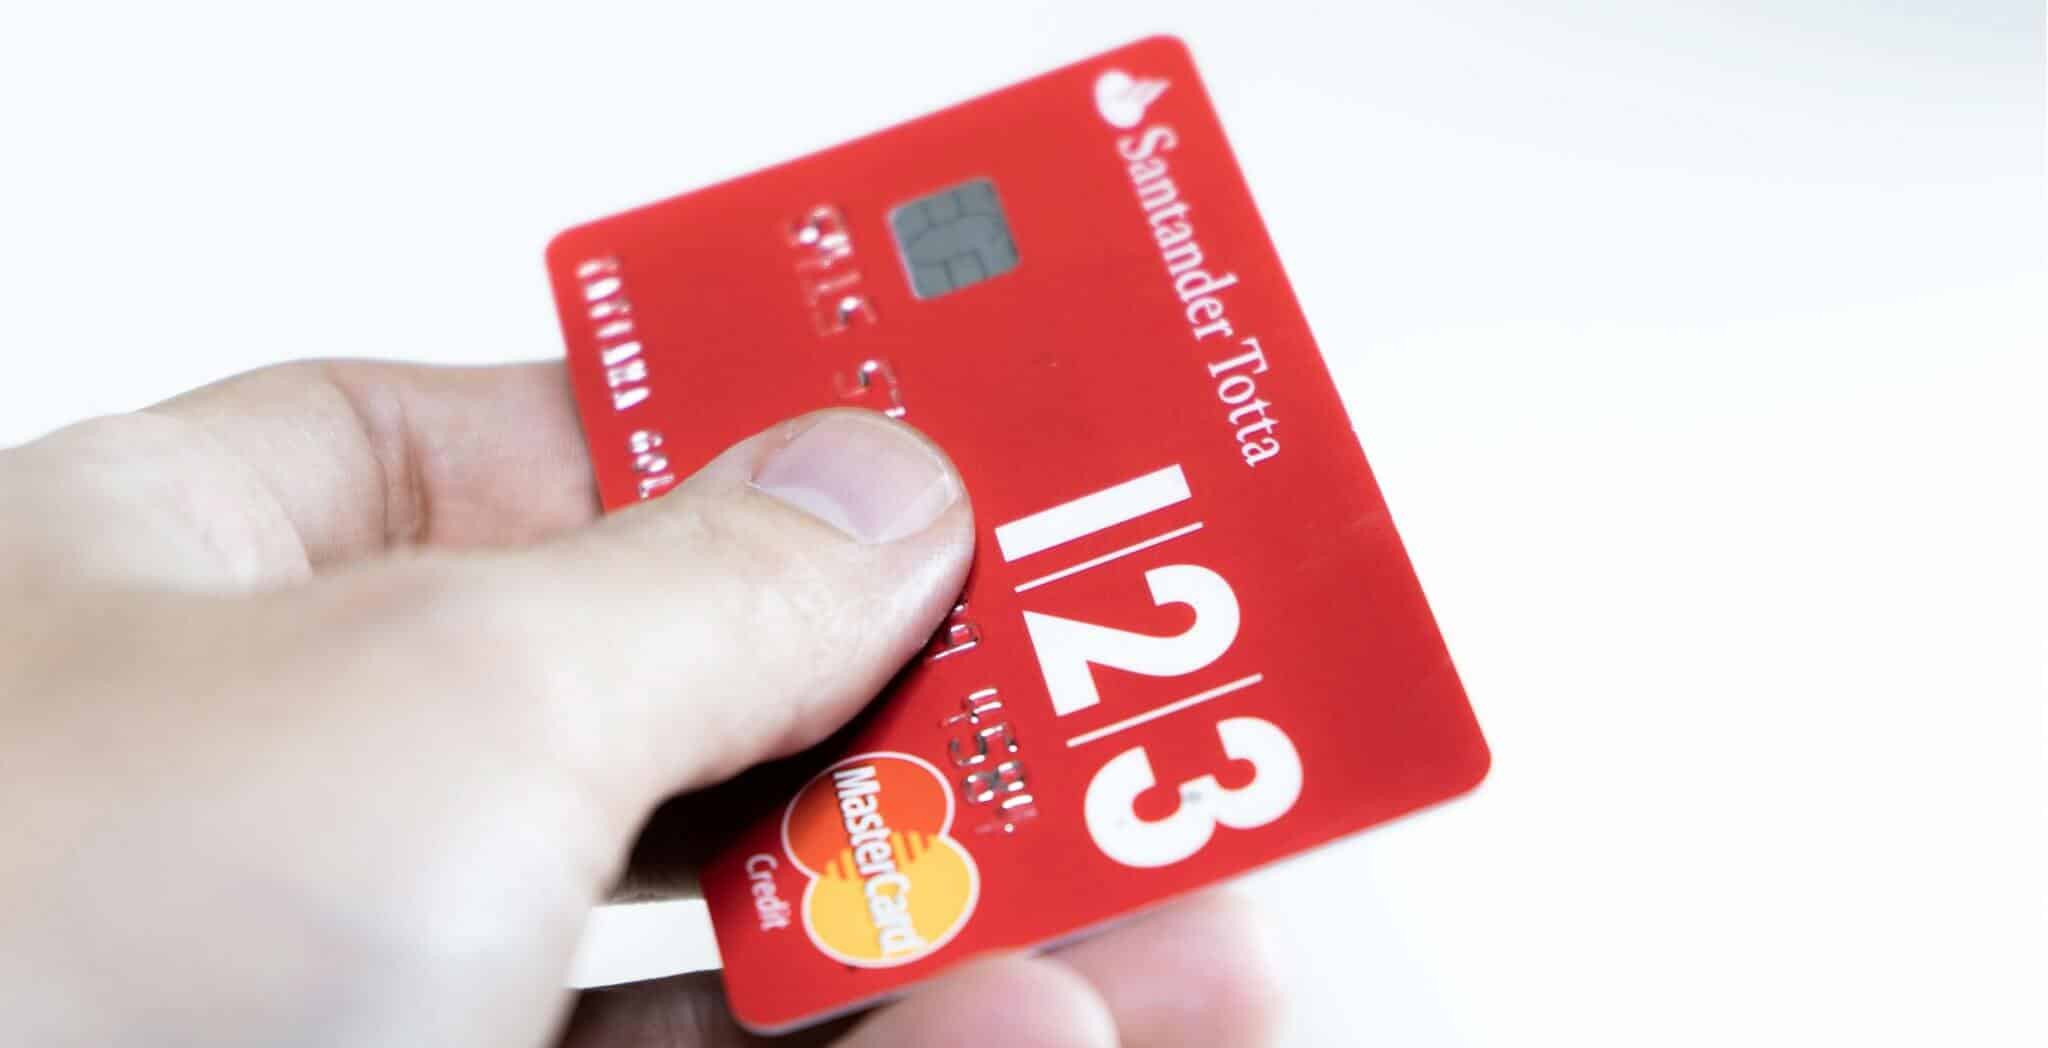 cartão de crédito vermelho do santander